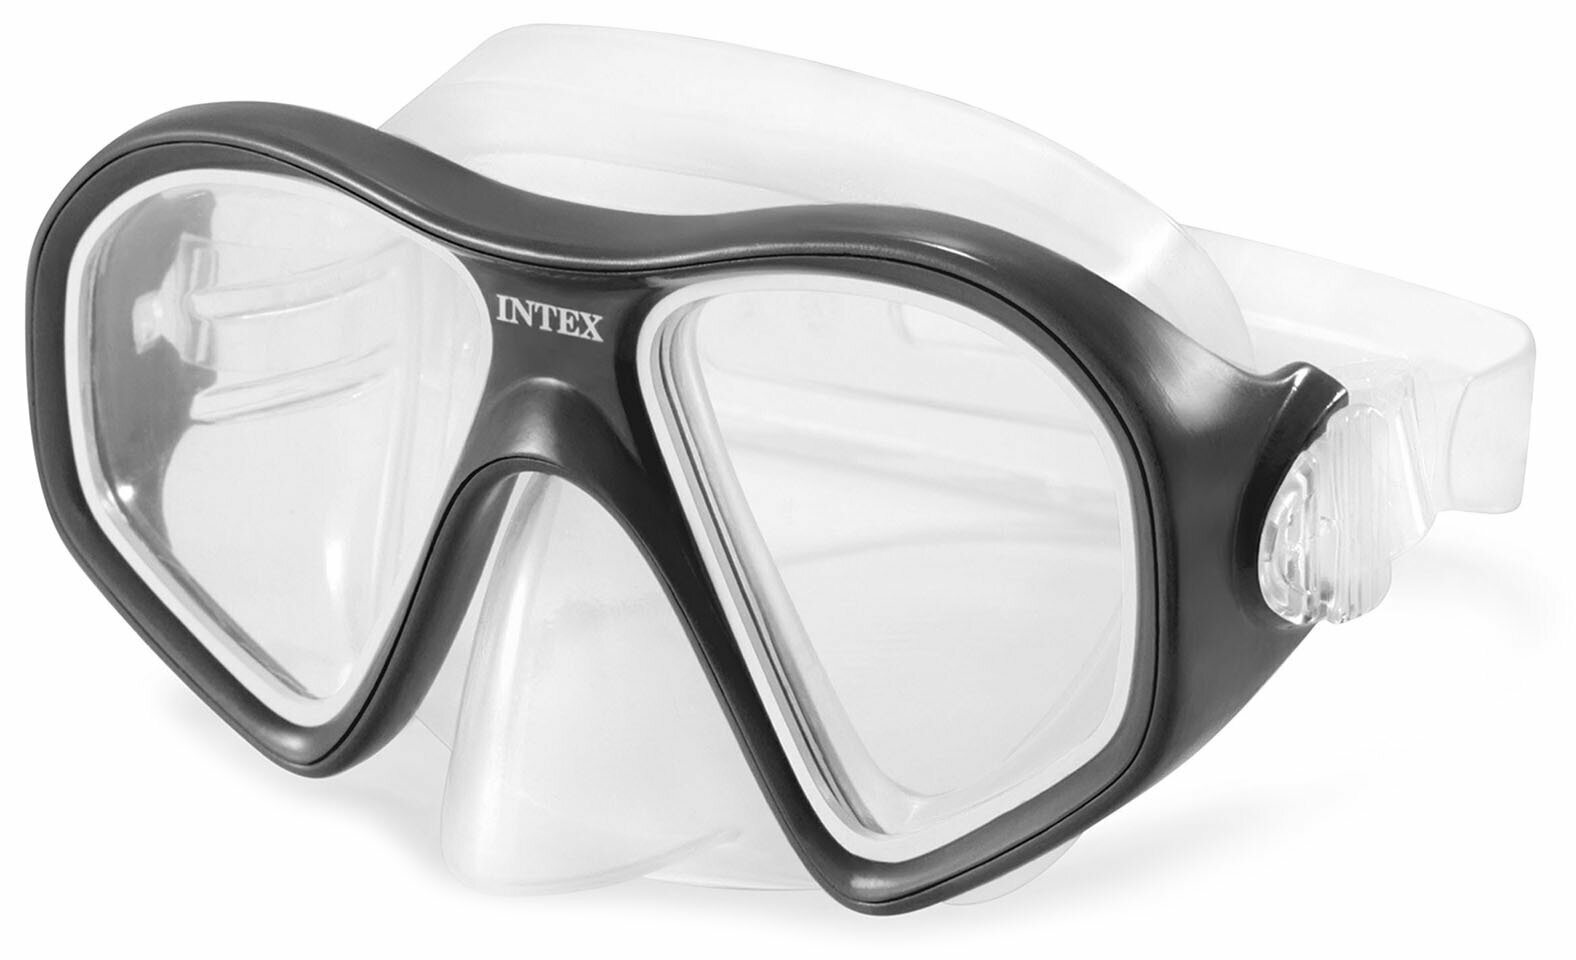 Маска для подводного плавания INTEX REEF RIDER в бассейне и открытых водоемах, плавательные очки для ныряния и дайвинга, от 14 лет, цвета микс